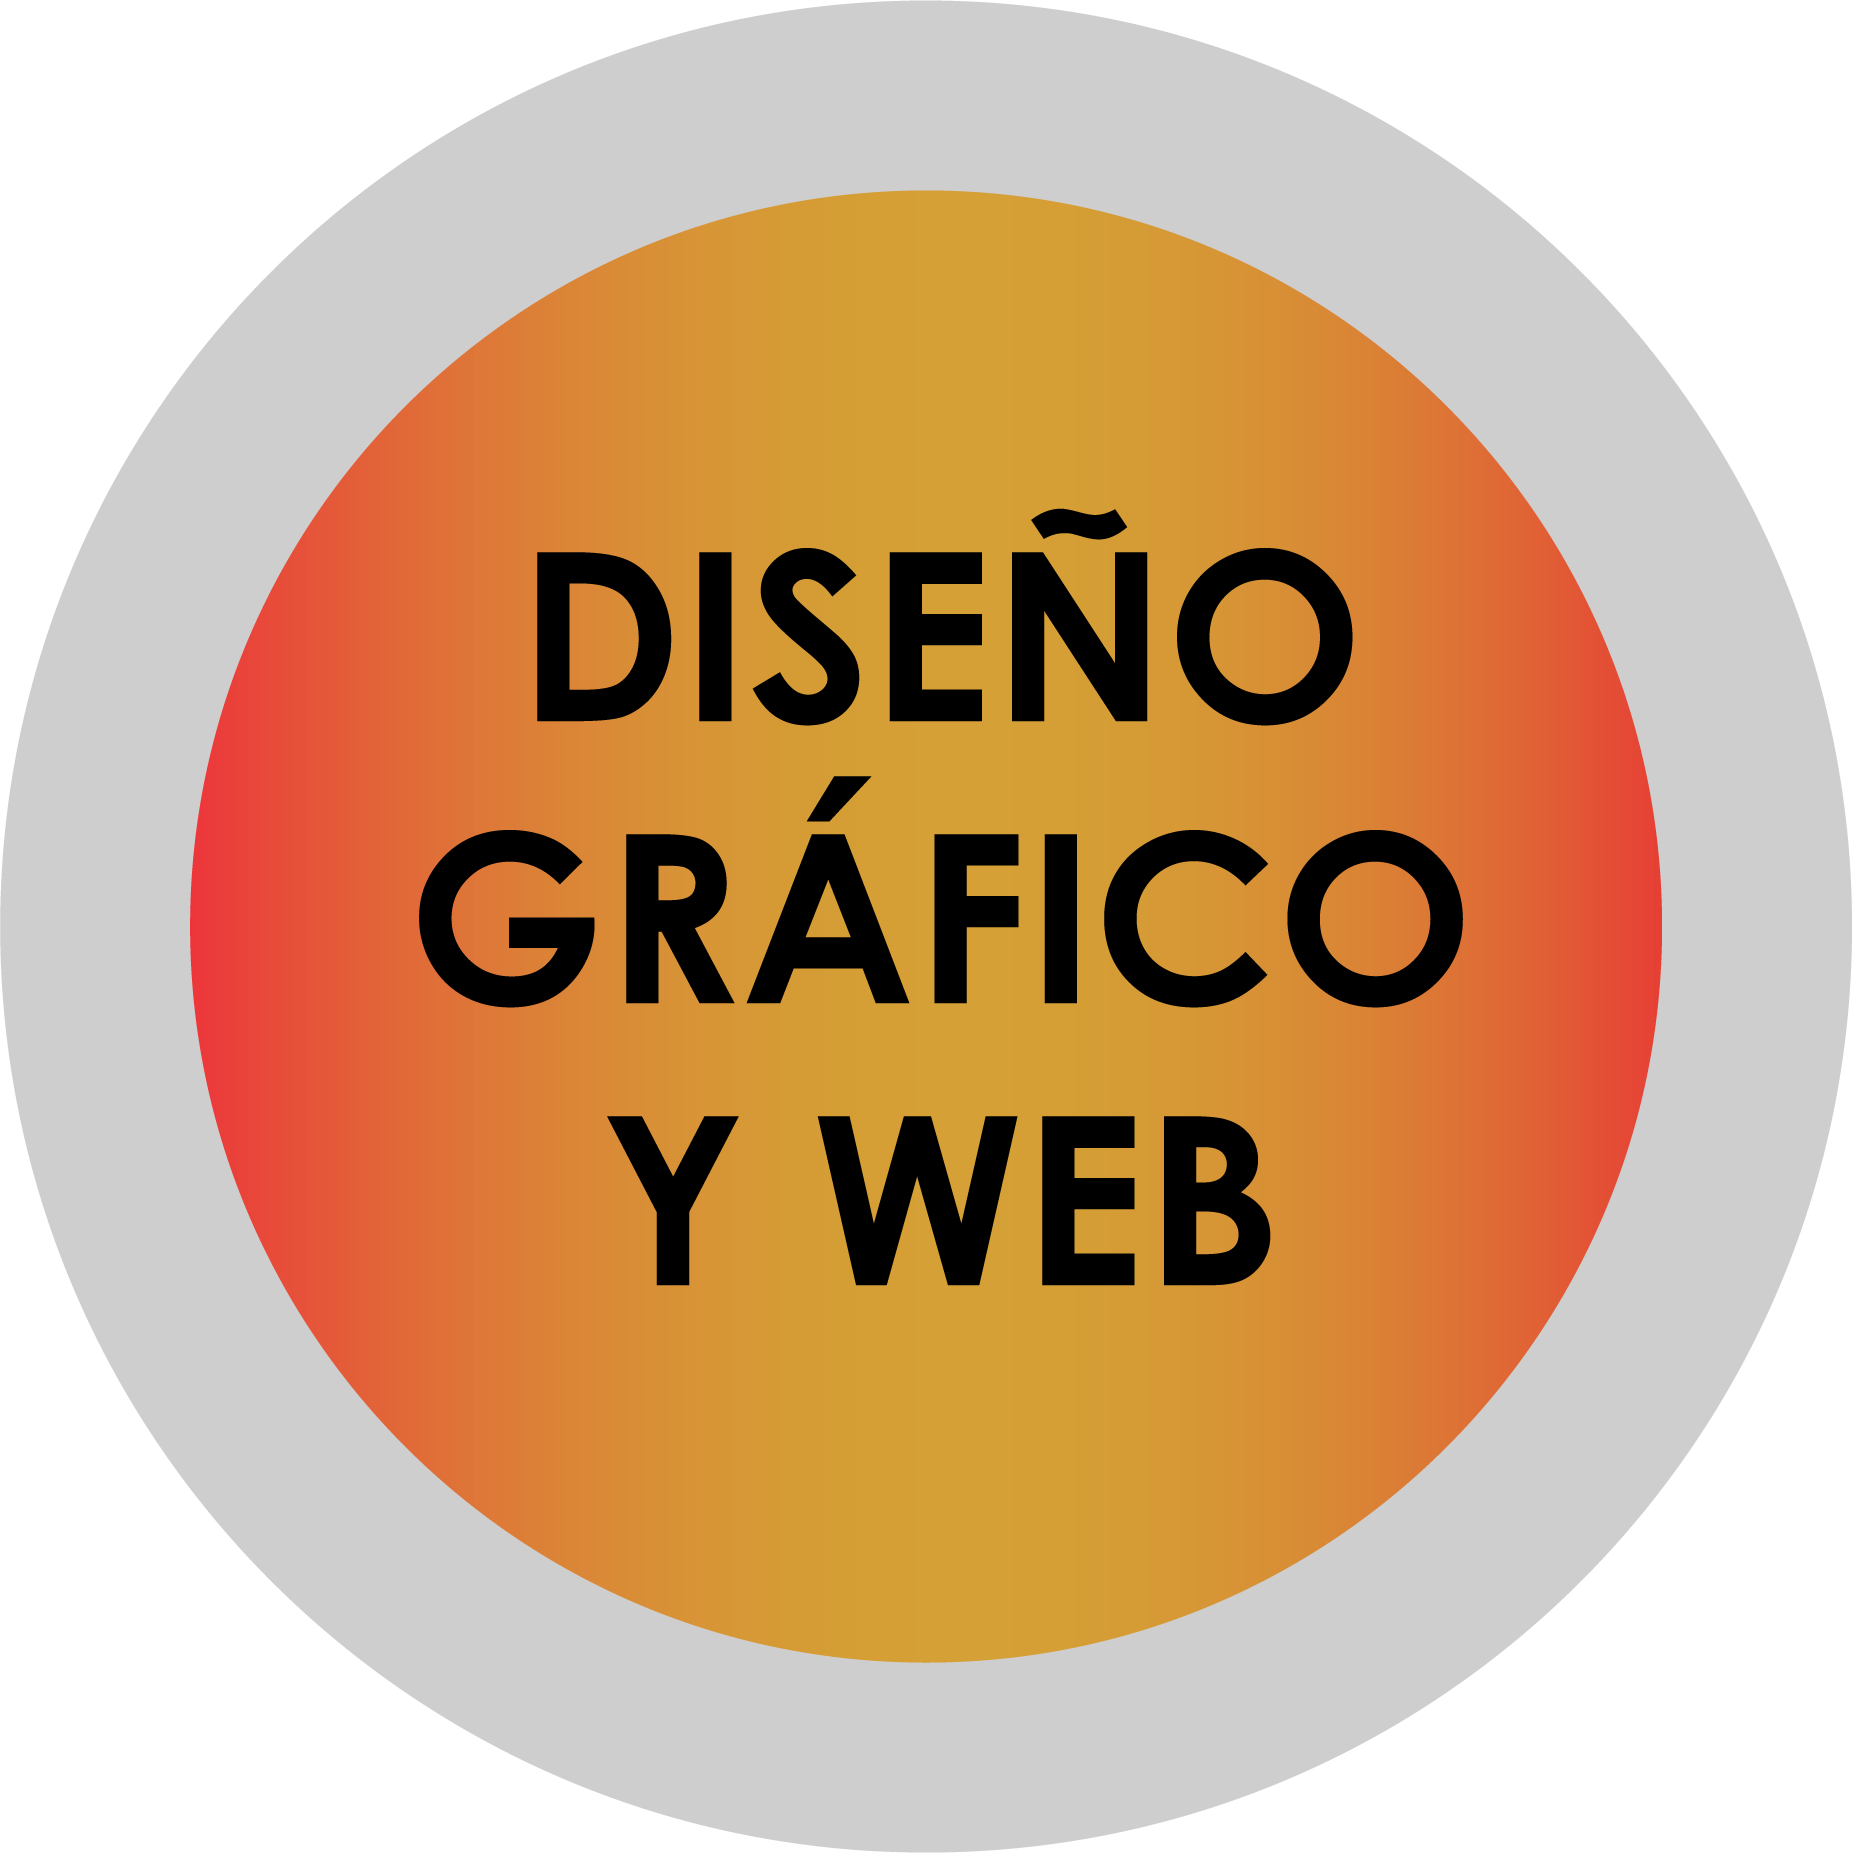 Diseño gráfico y web